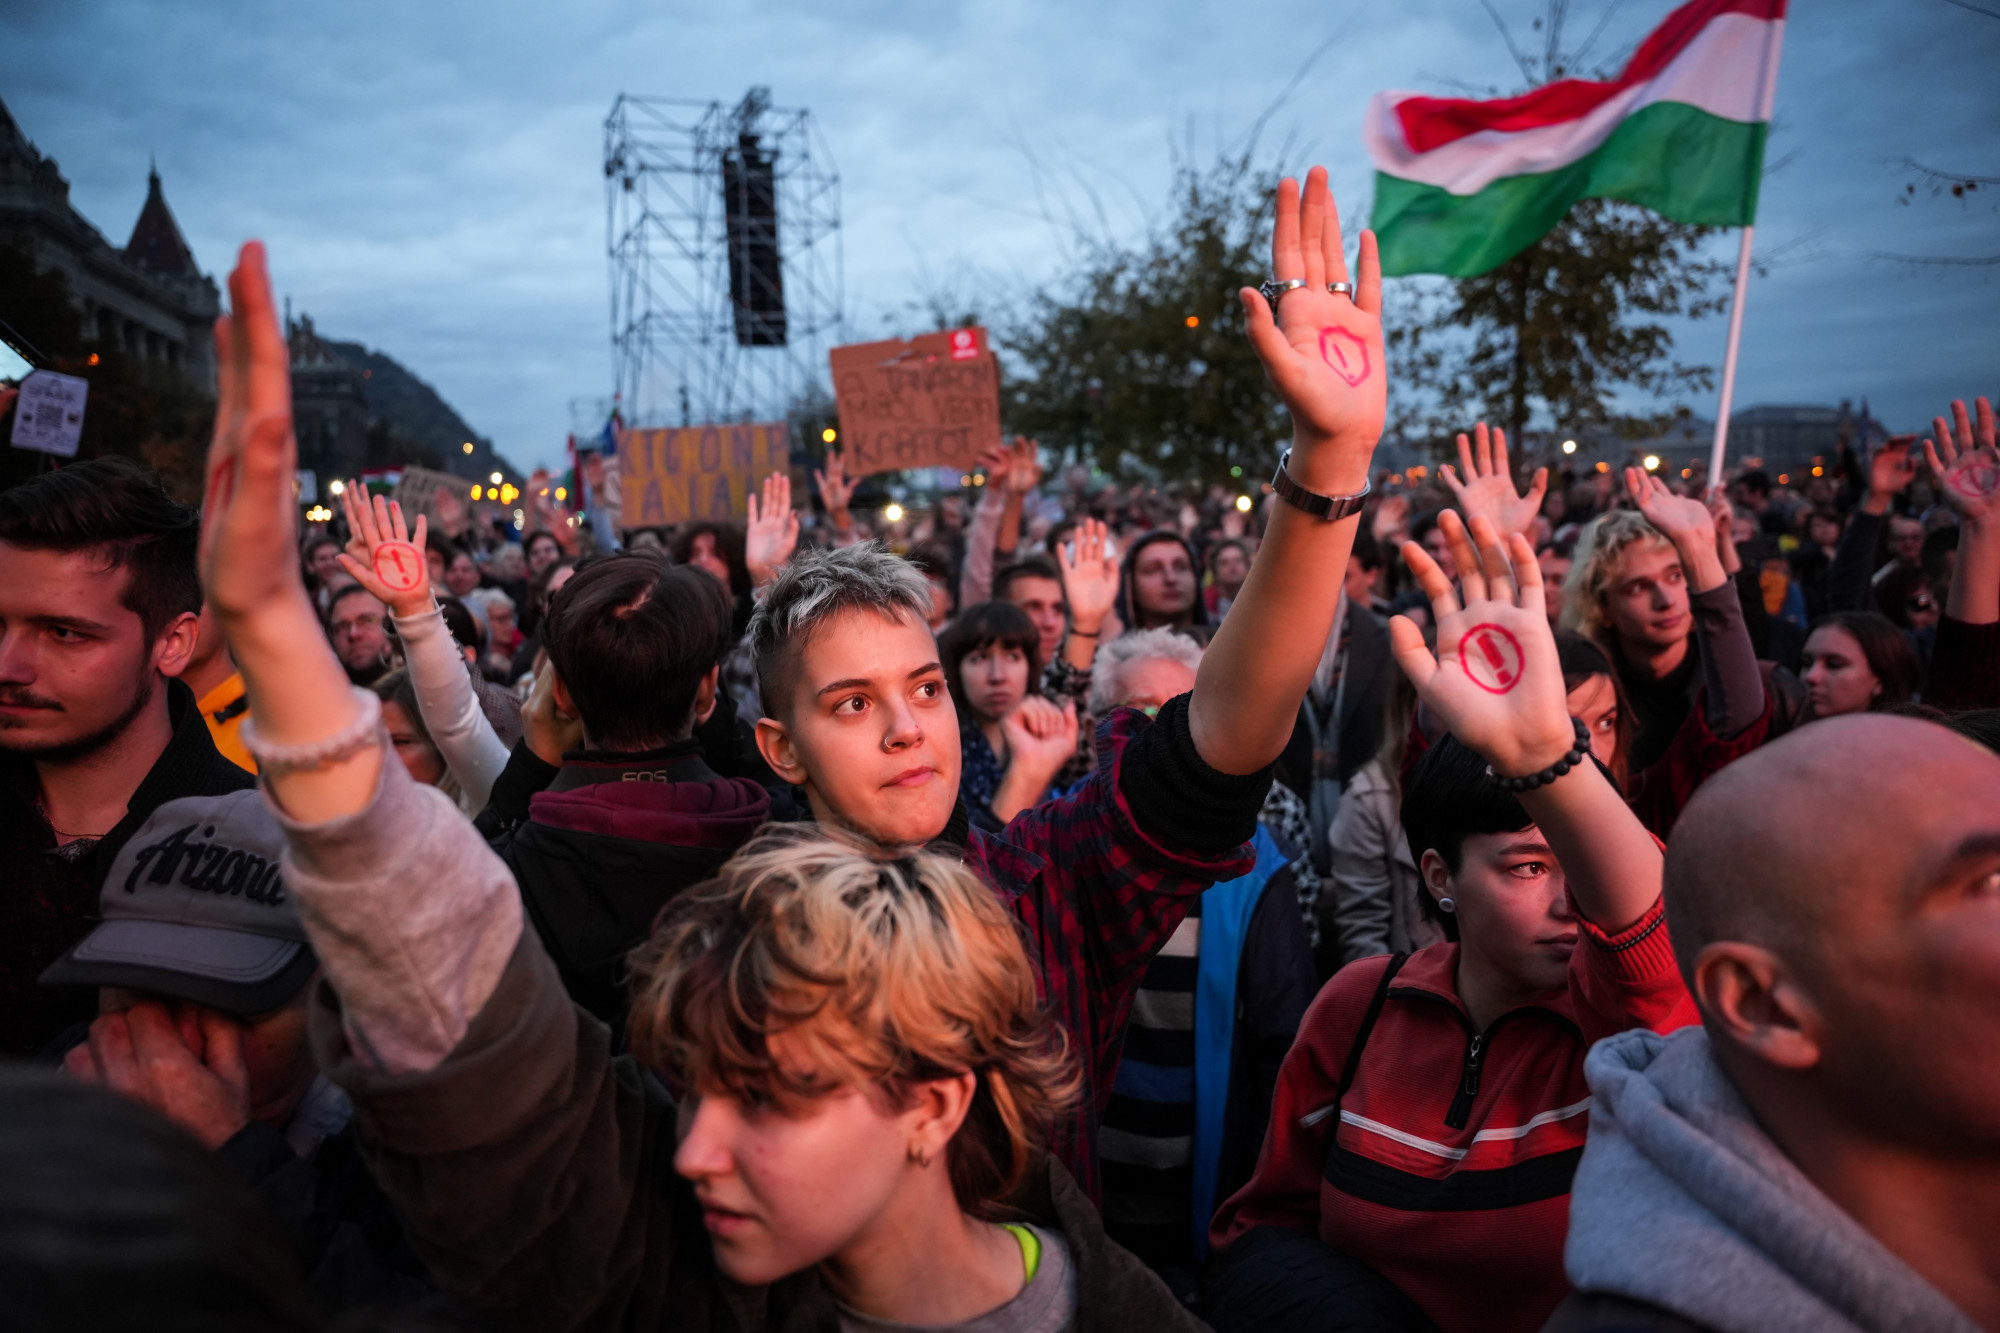 Az elkeseredett tömeg, ami kiszorította Orbán Viktort az utcáról